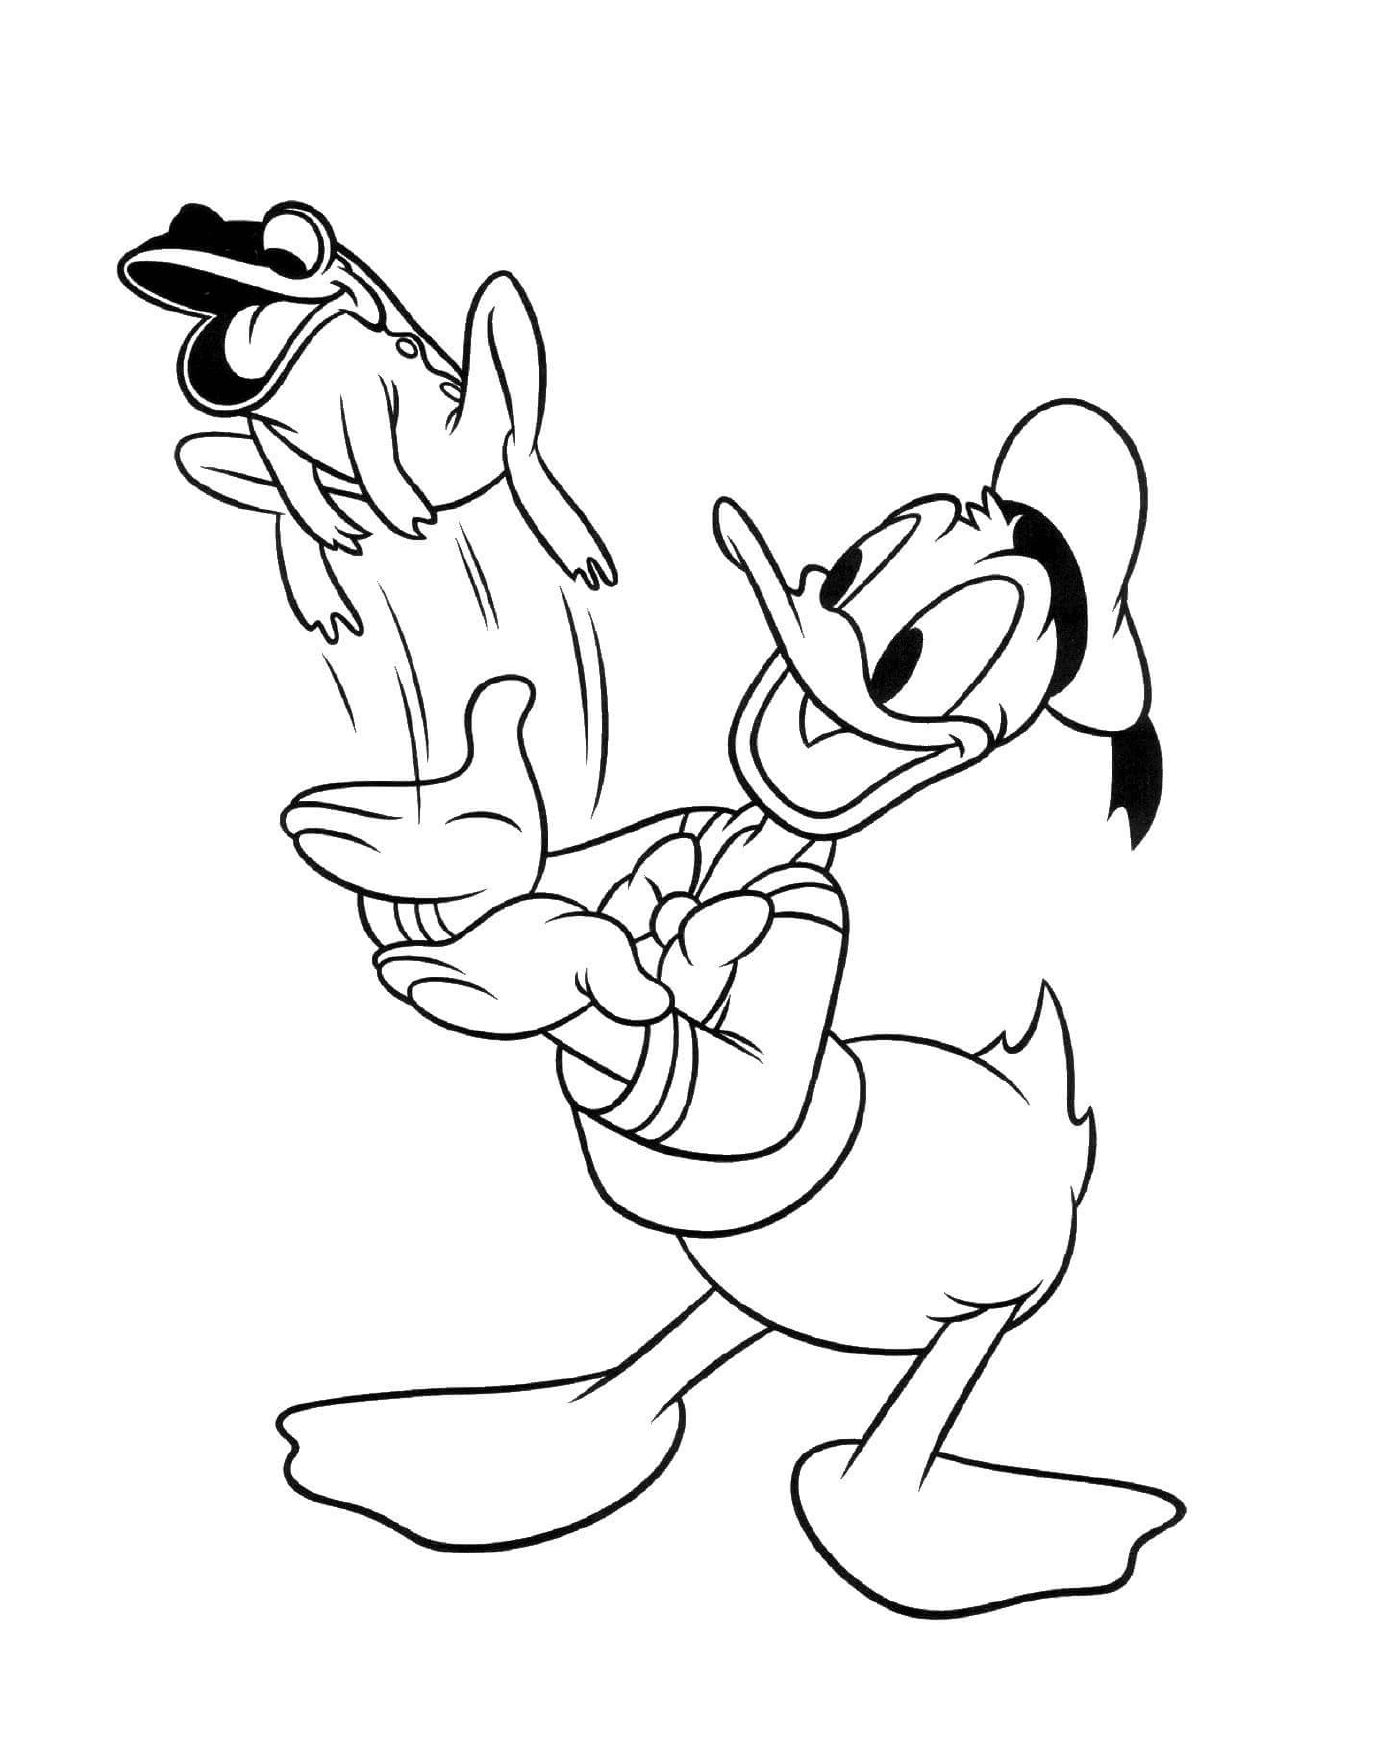  Donald Duck spielt mit einem Hund 